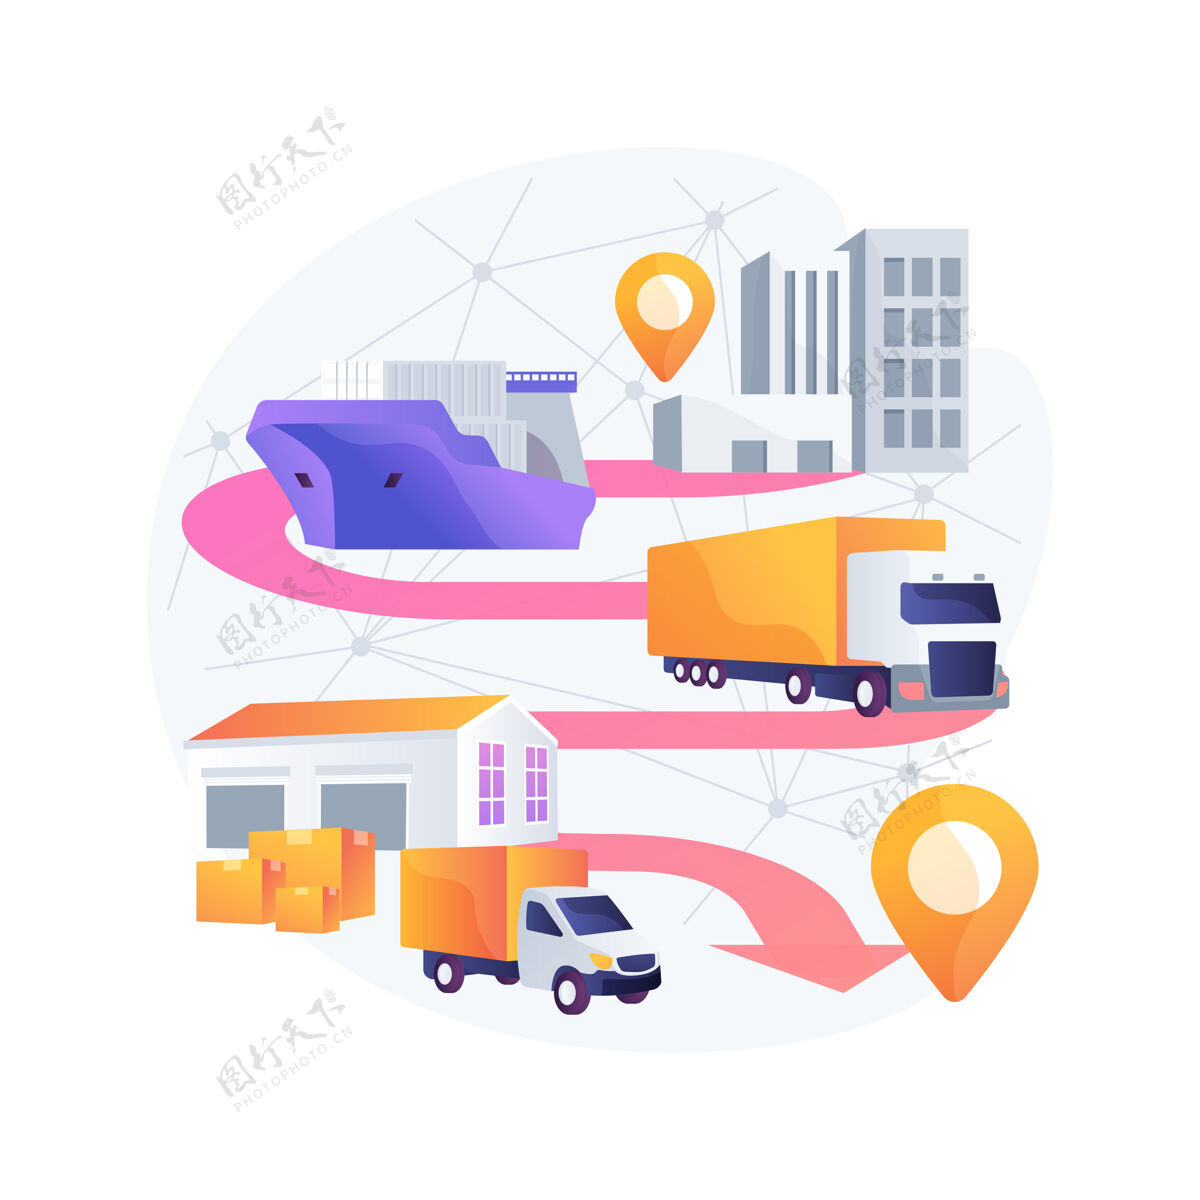 秩序运输技术中的区块链抽象概念说明商业自动化货运